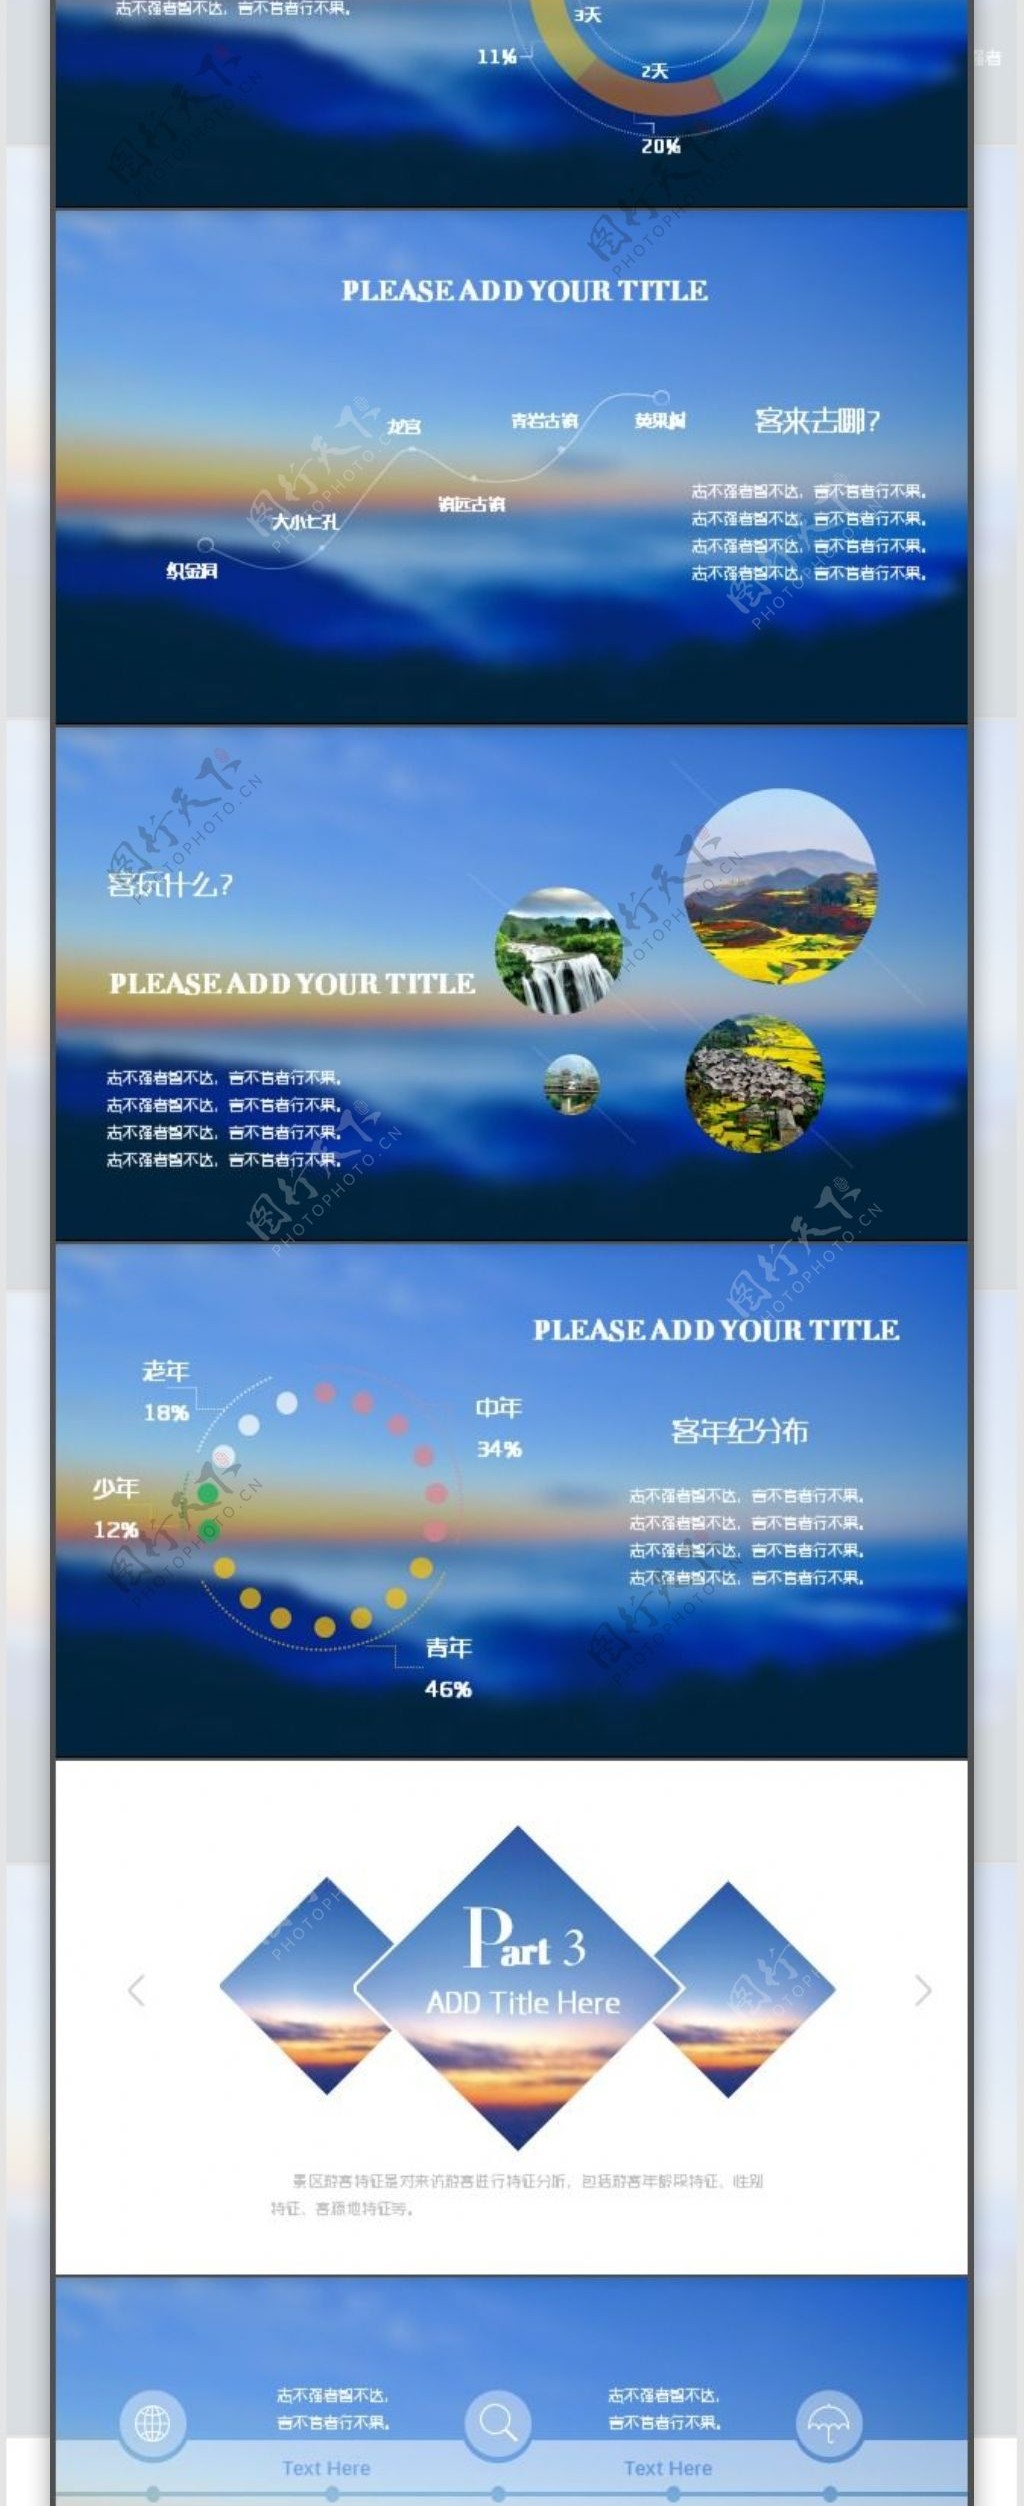 蓝色主色调IOS风格旅游主题模板